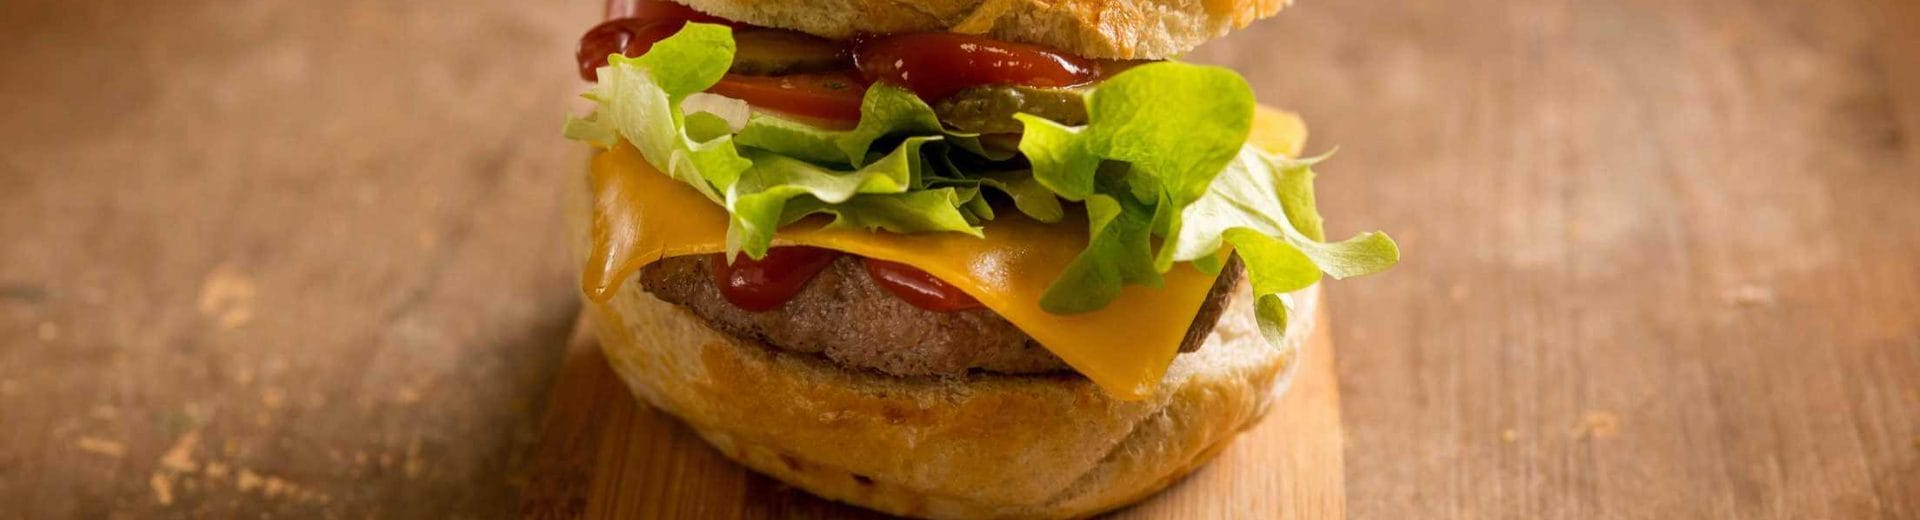 Hamburger classici, le scelte di De Gustibus